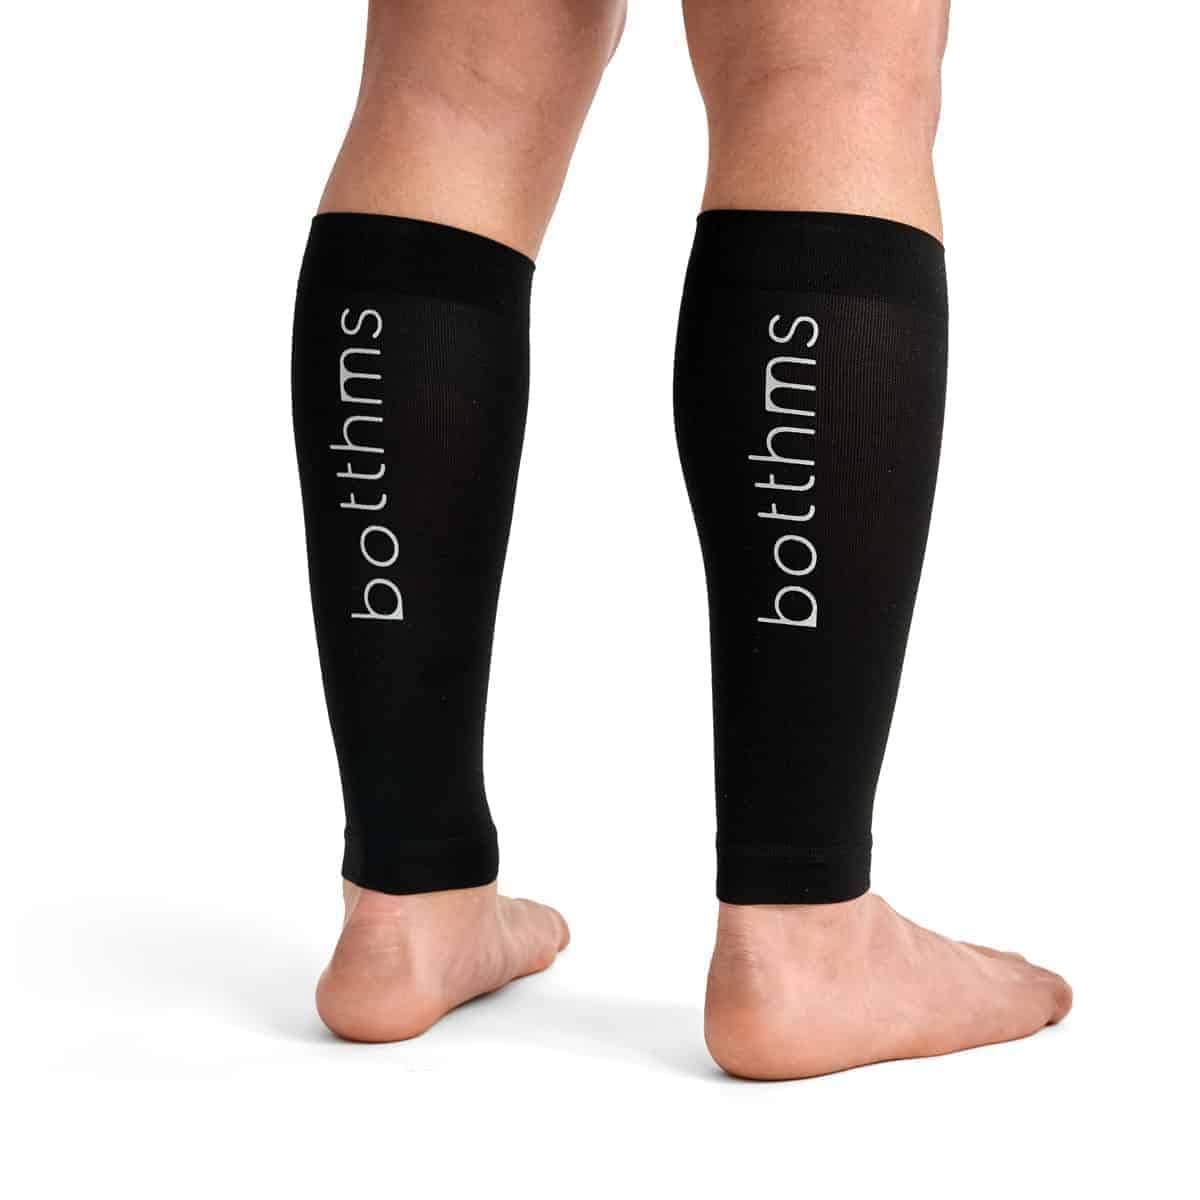 botthms botthms Calf Compression Sleeves Compression Sock